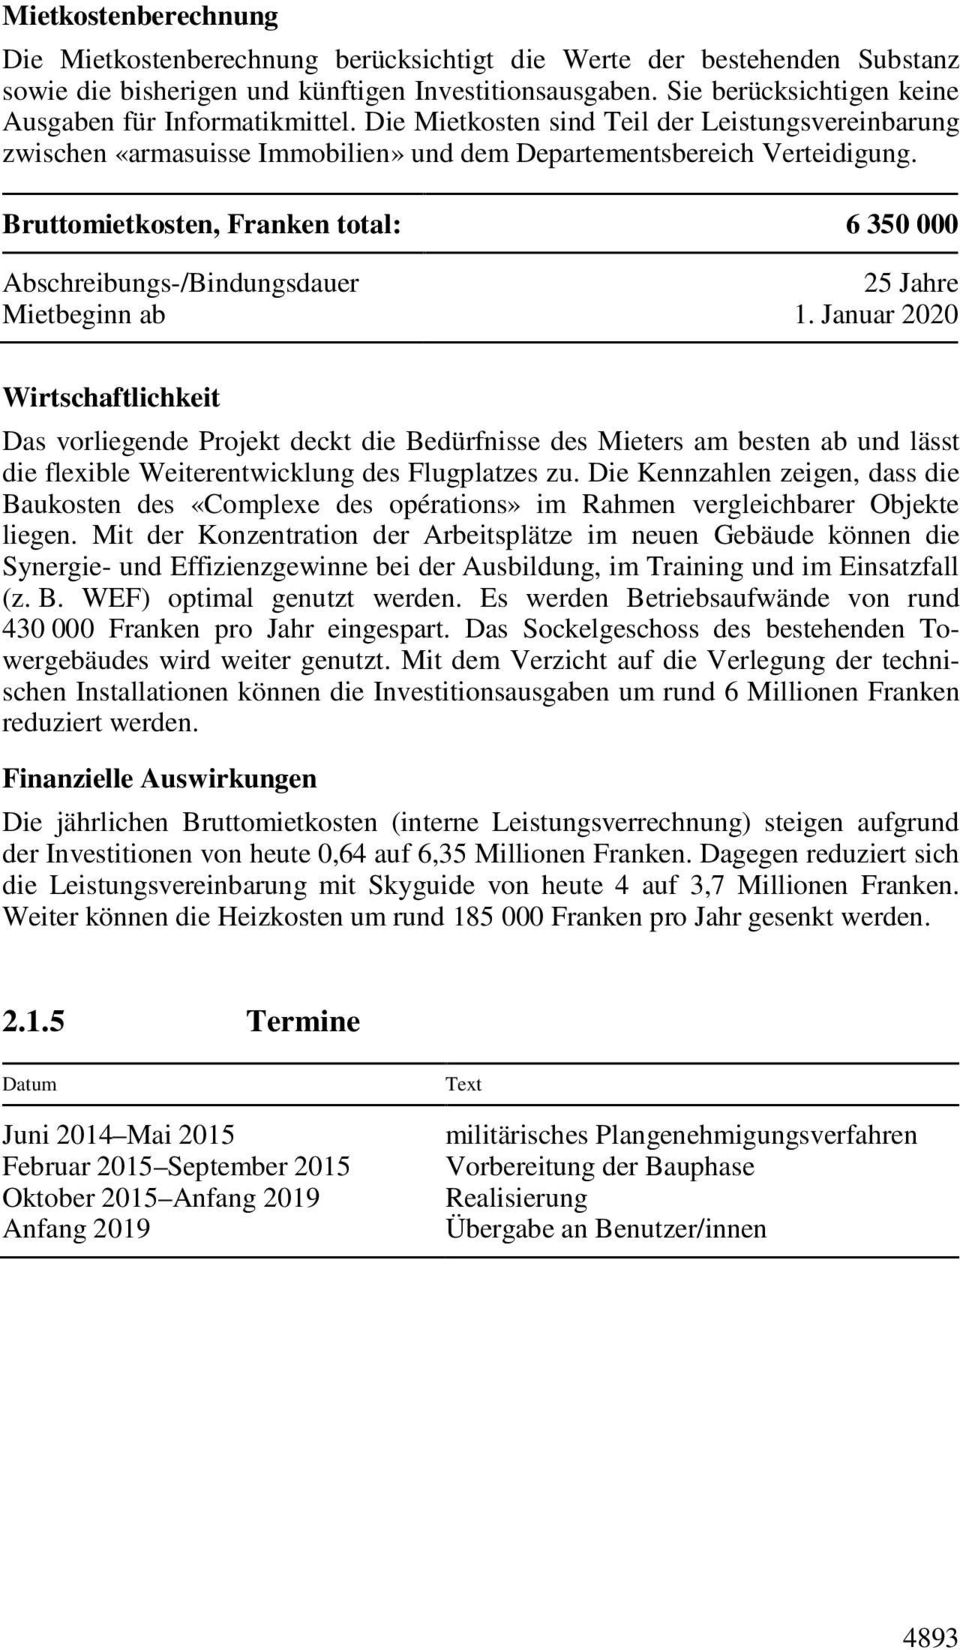 Bruttomietkosten, Franken total: 6 350 000 Abschreibungs-/Bindungsdauer 25 Jahre Mietbeginn ab 1.